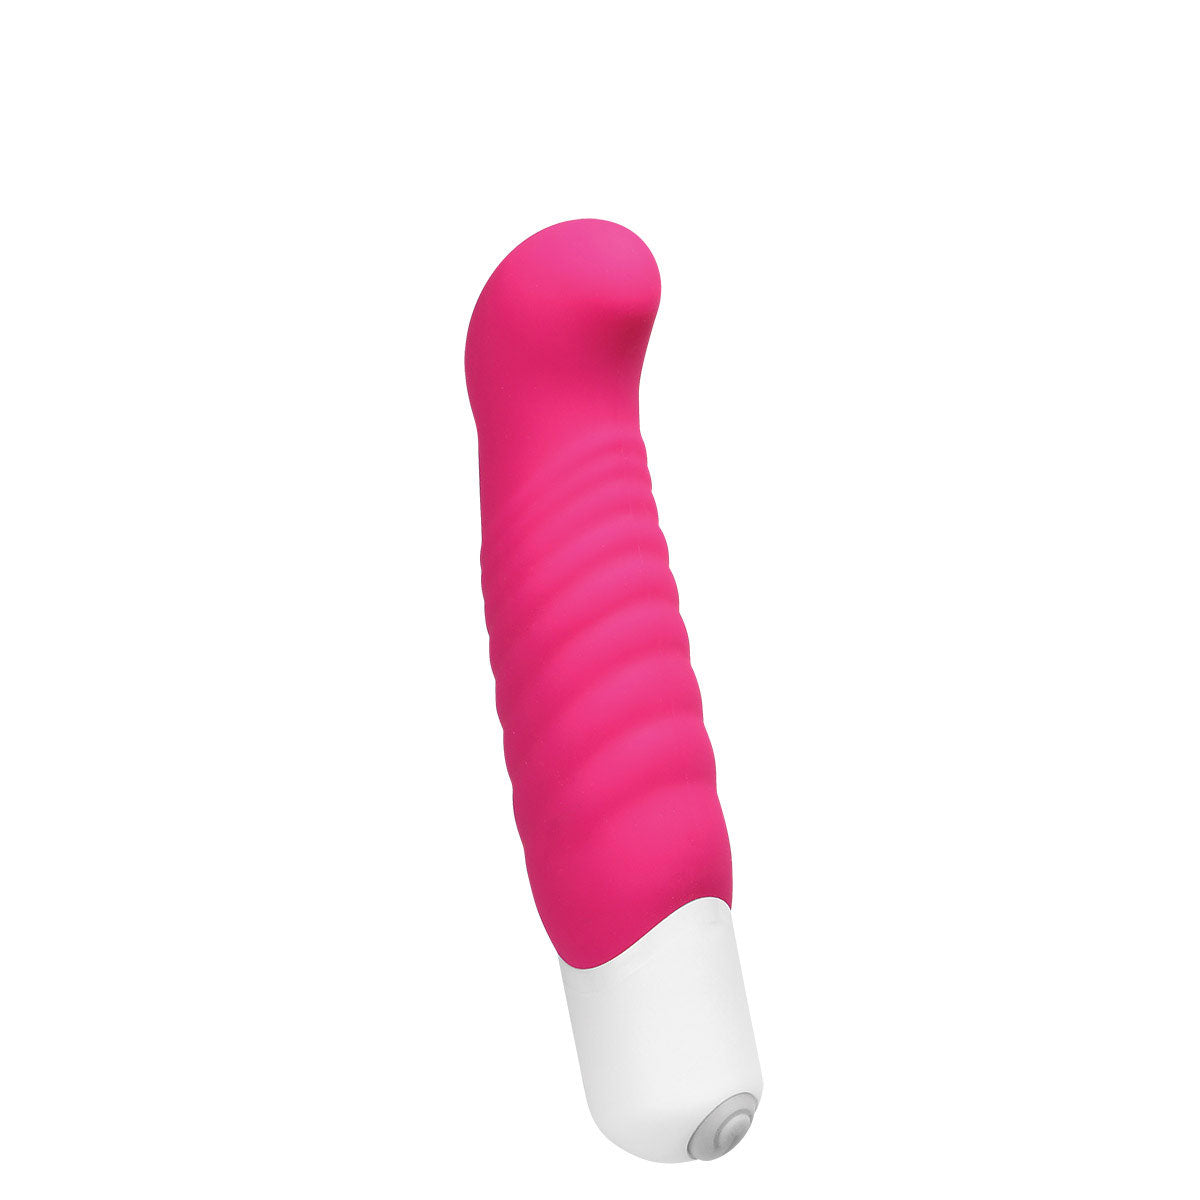 VeDO Inu Ribbed G-Spot Vibrator Hot Pink